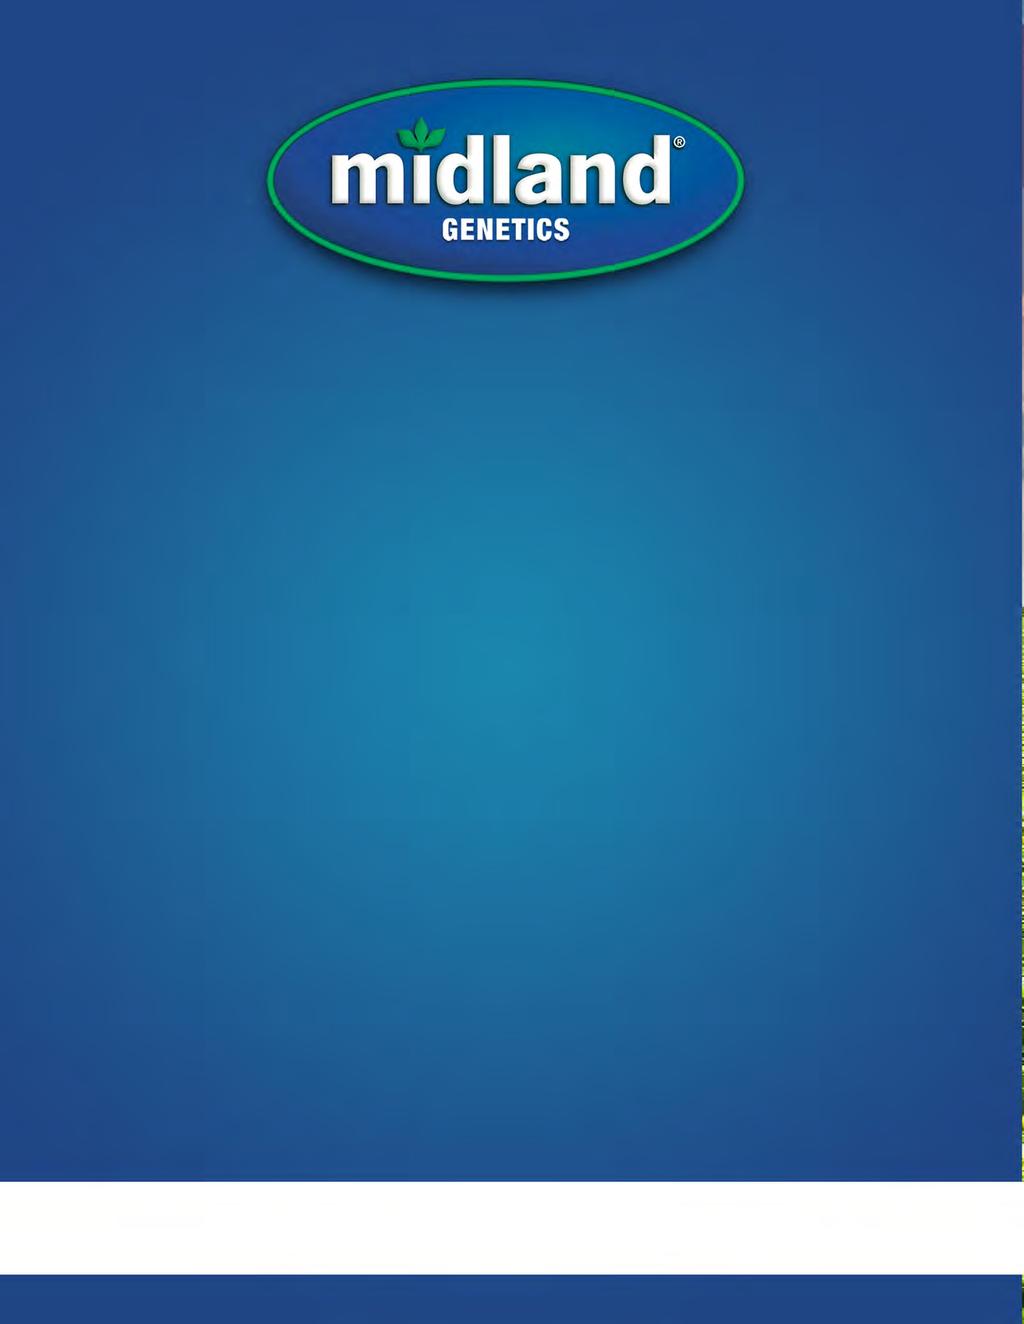 800.819.SEED (7333) 785.242.1029 (fax) info@midlandgenetics.com MidlandGenetics.